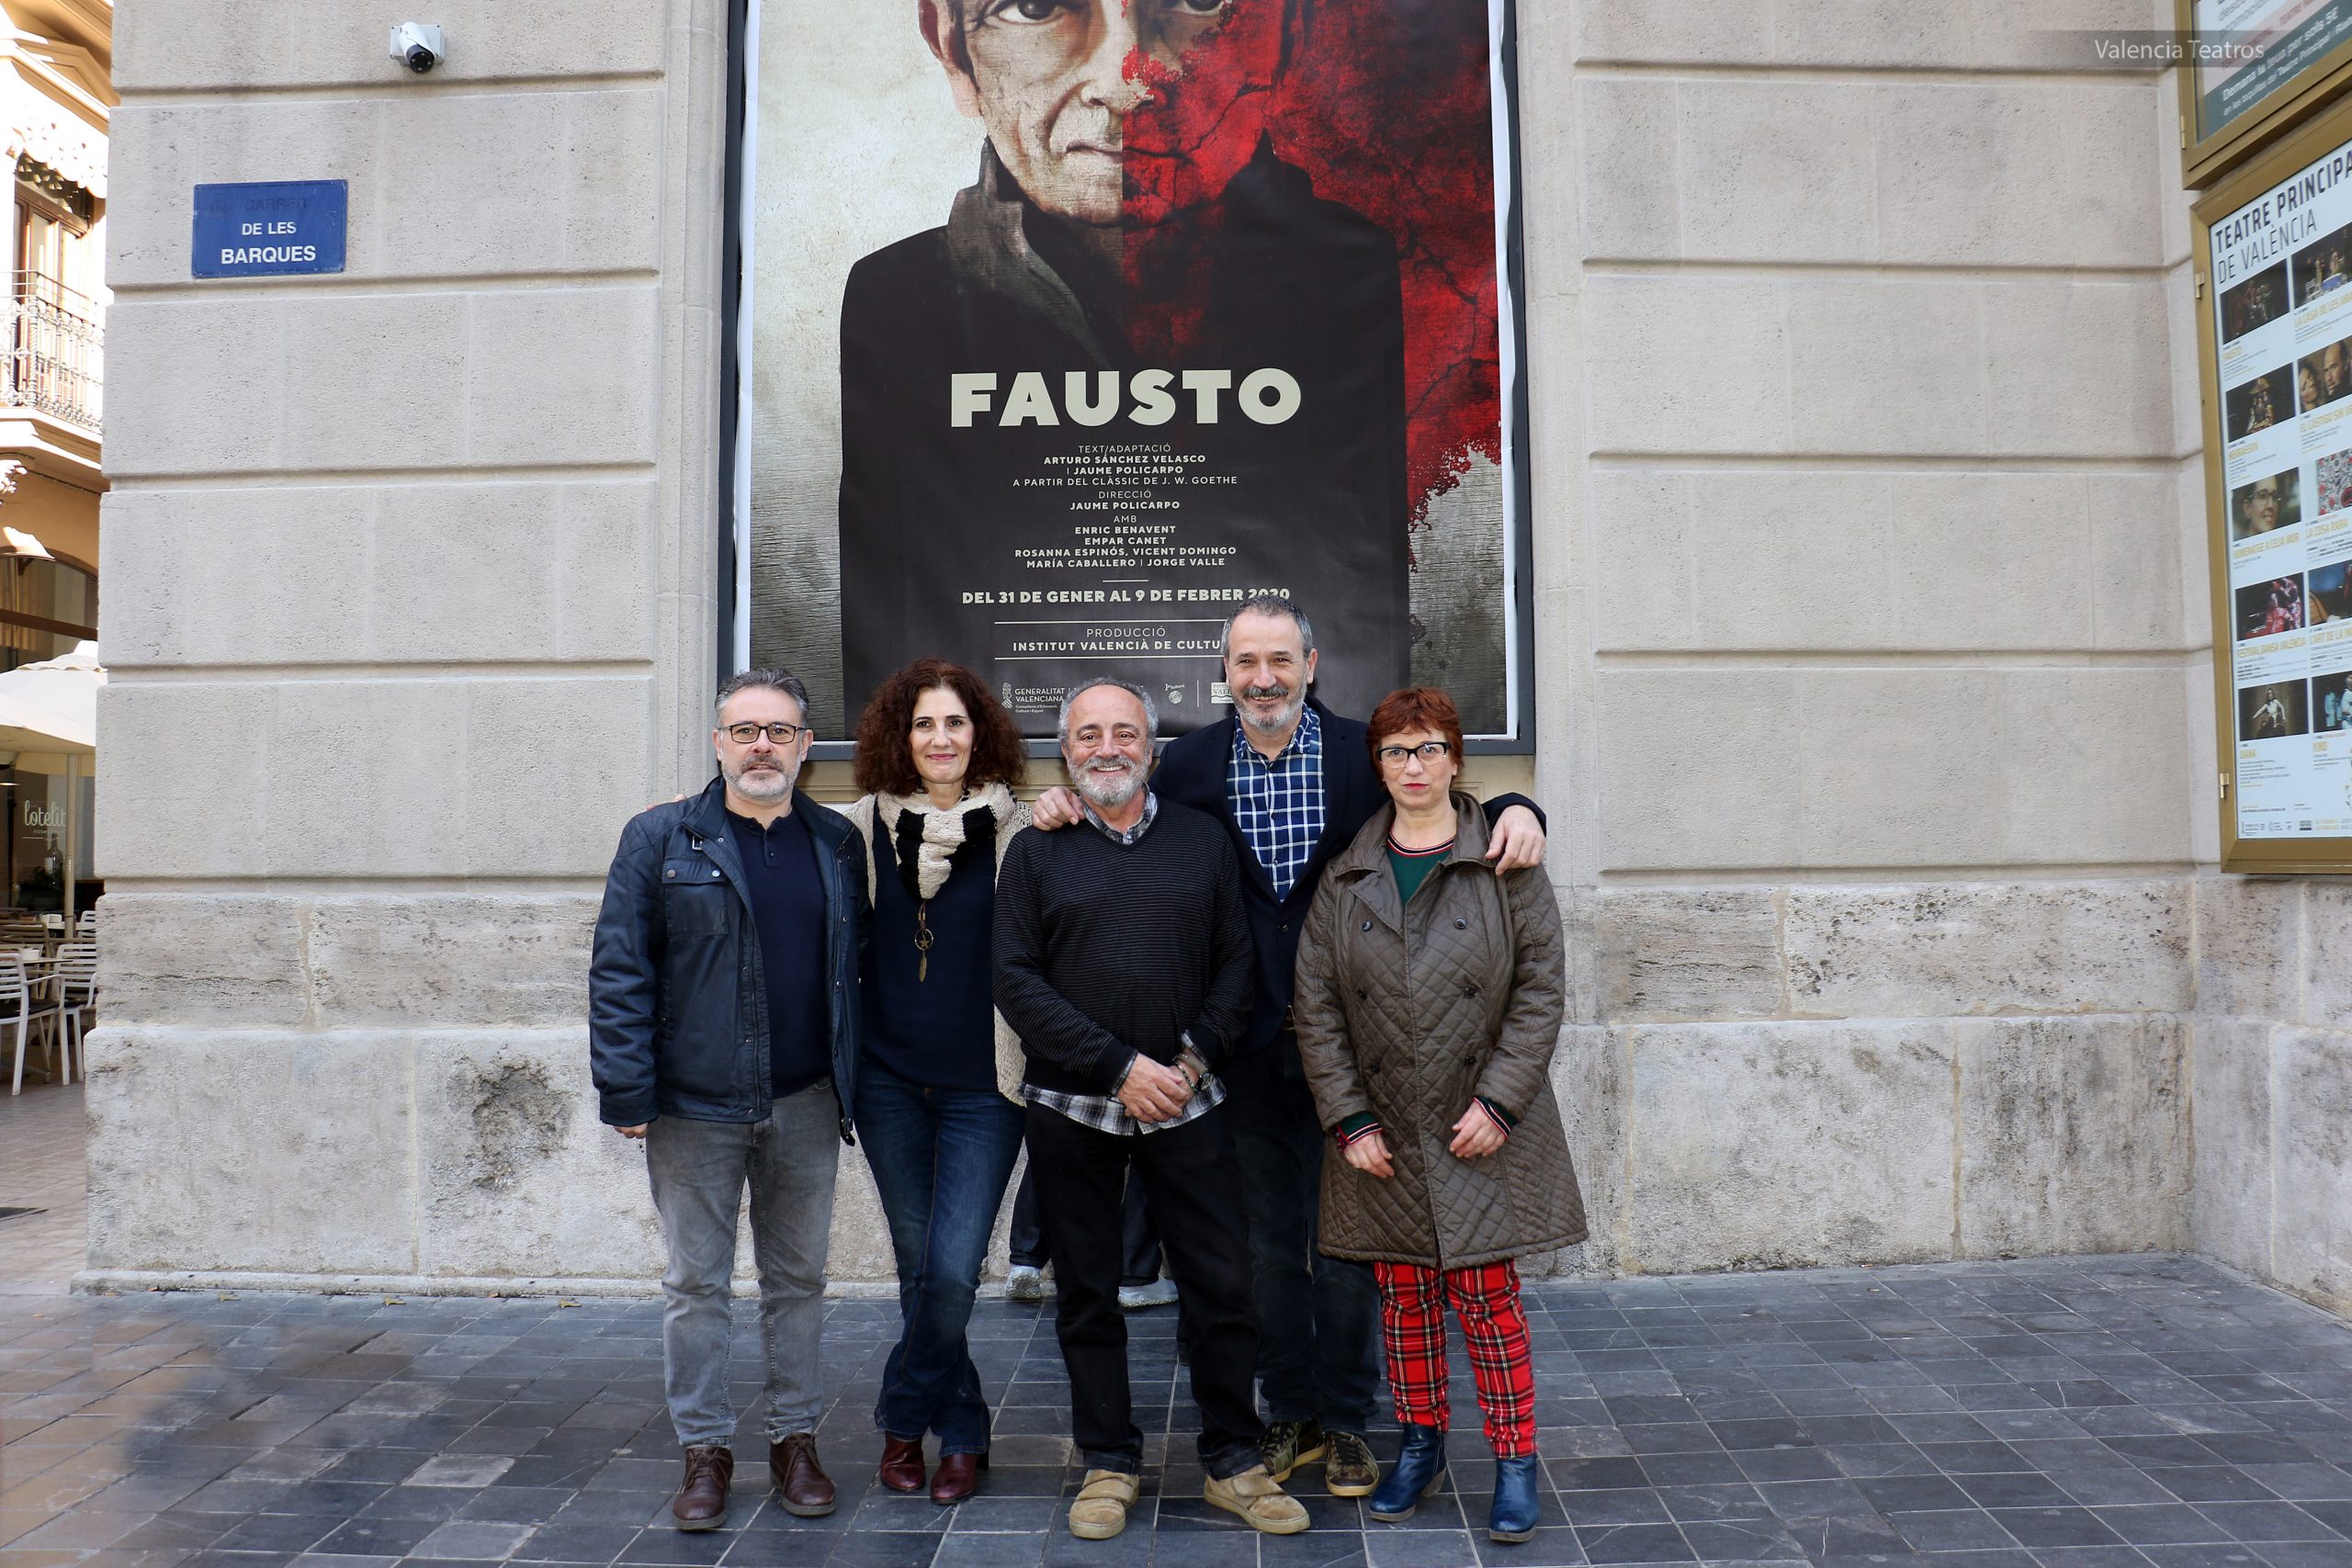 El Institut Valencià de Cultura presenta su producción “FAUSTO” en castellano